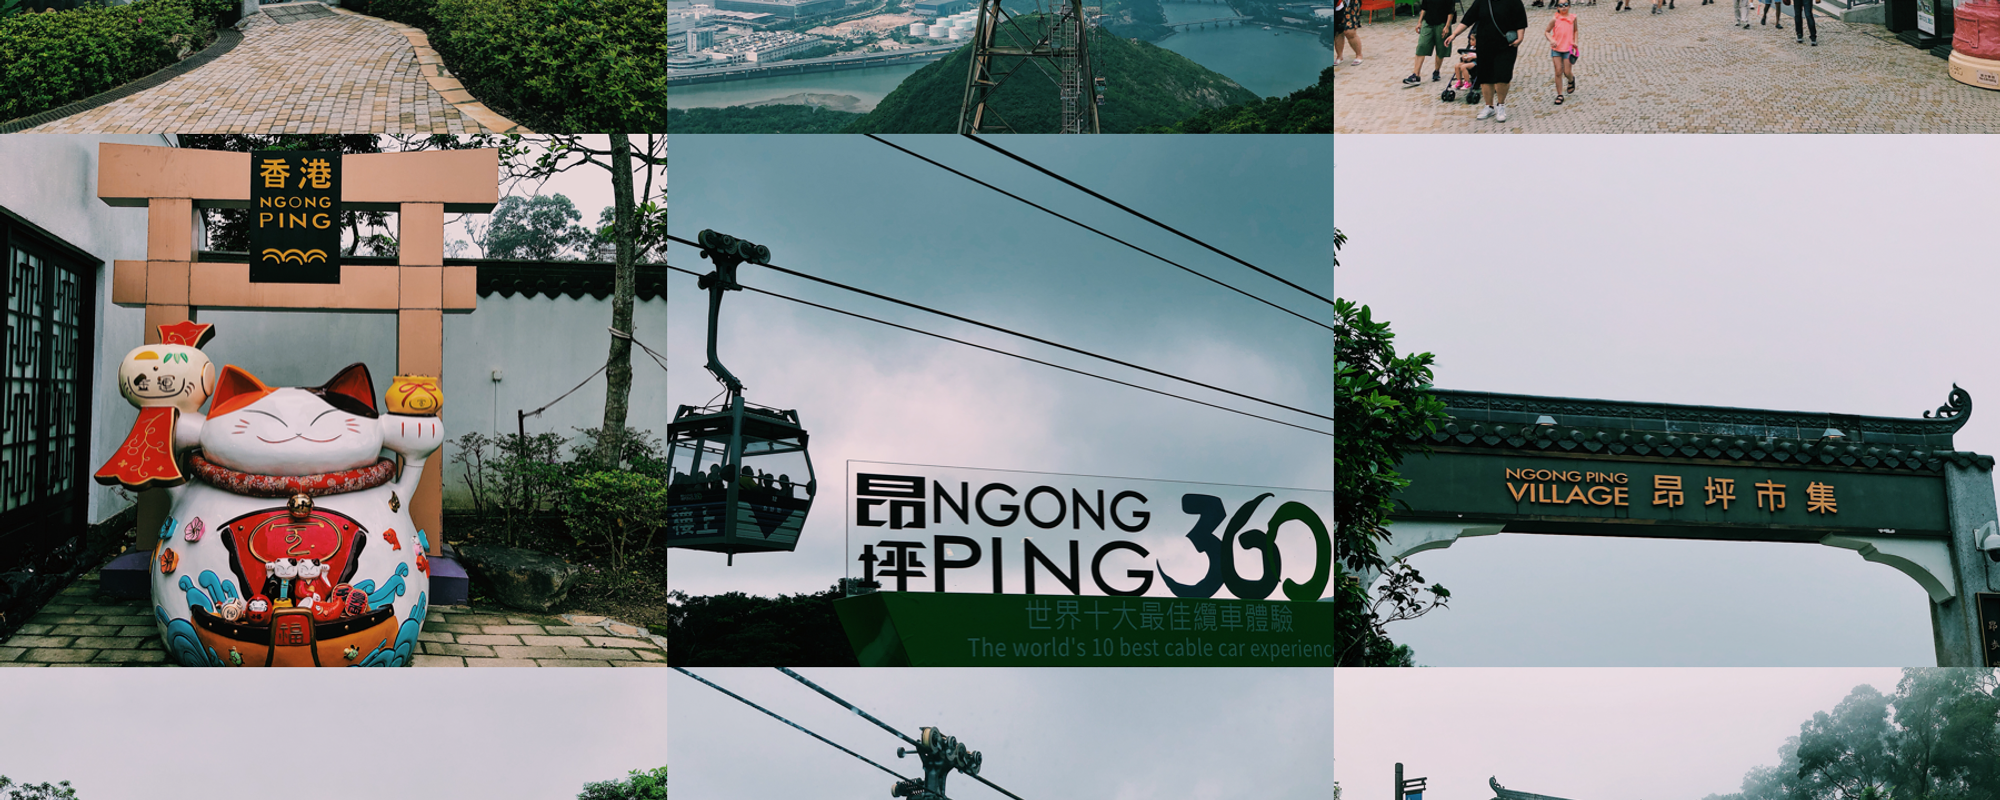 Hongkong Trip: Exploring Ngong Ping and First Gondola Lift Experience